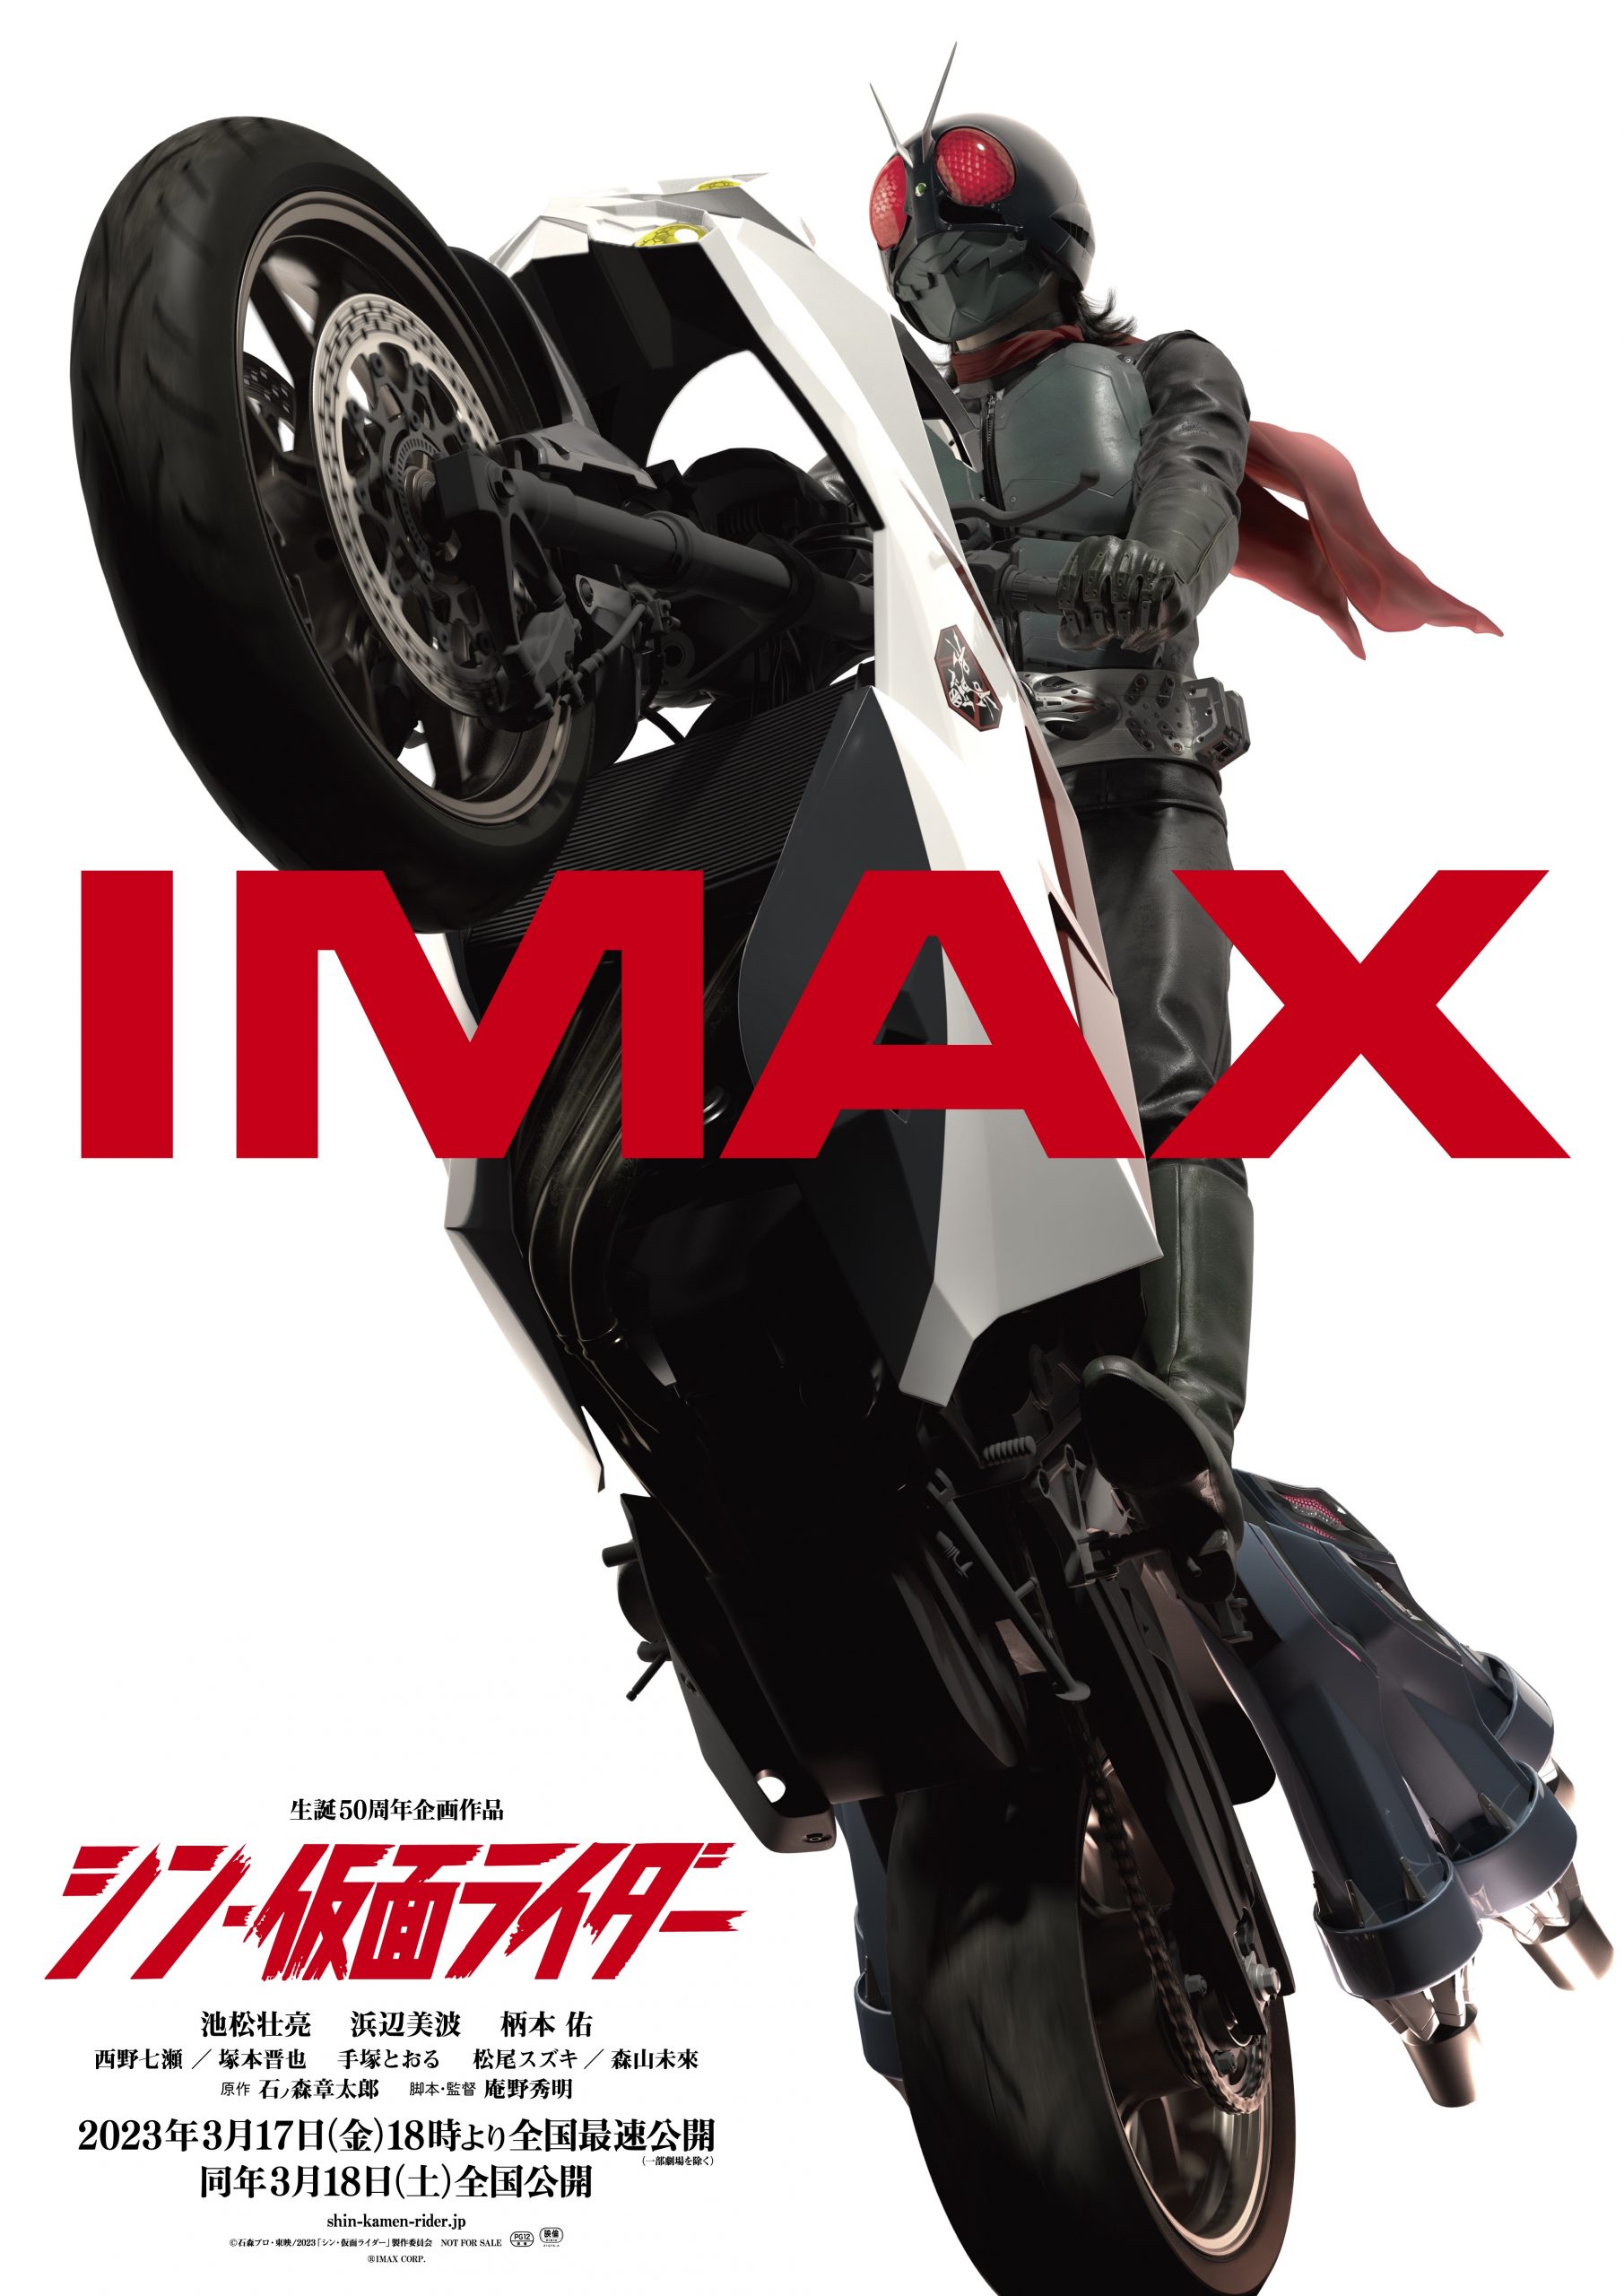 IMAXビジュアル解禁。そして、さまざまな上映形態の詳細も決定。